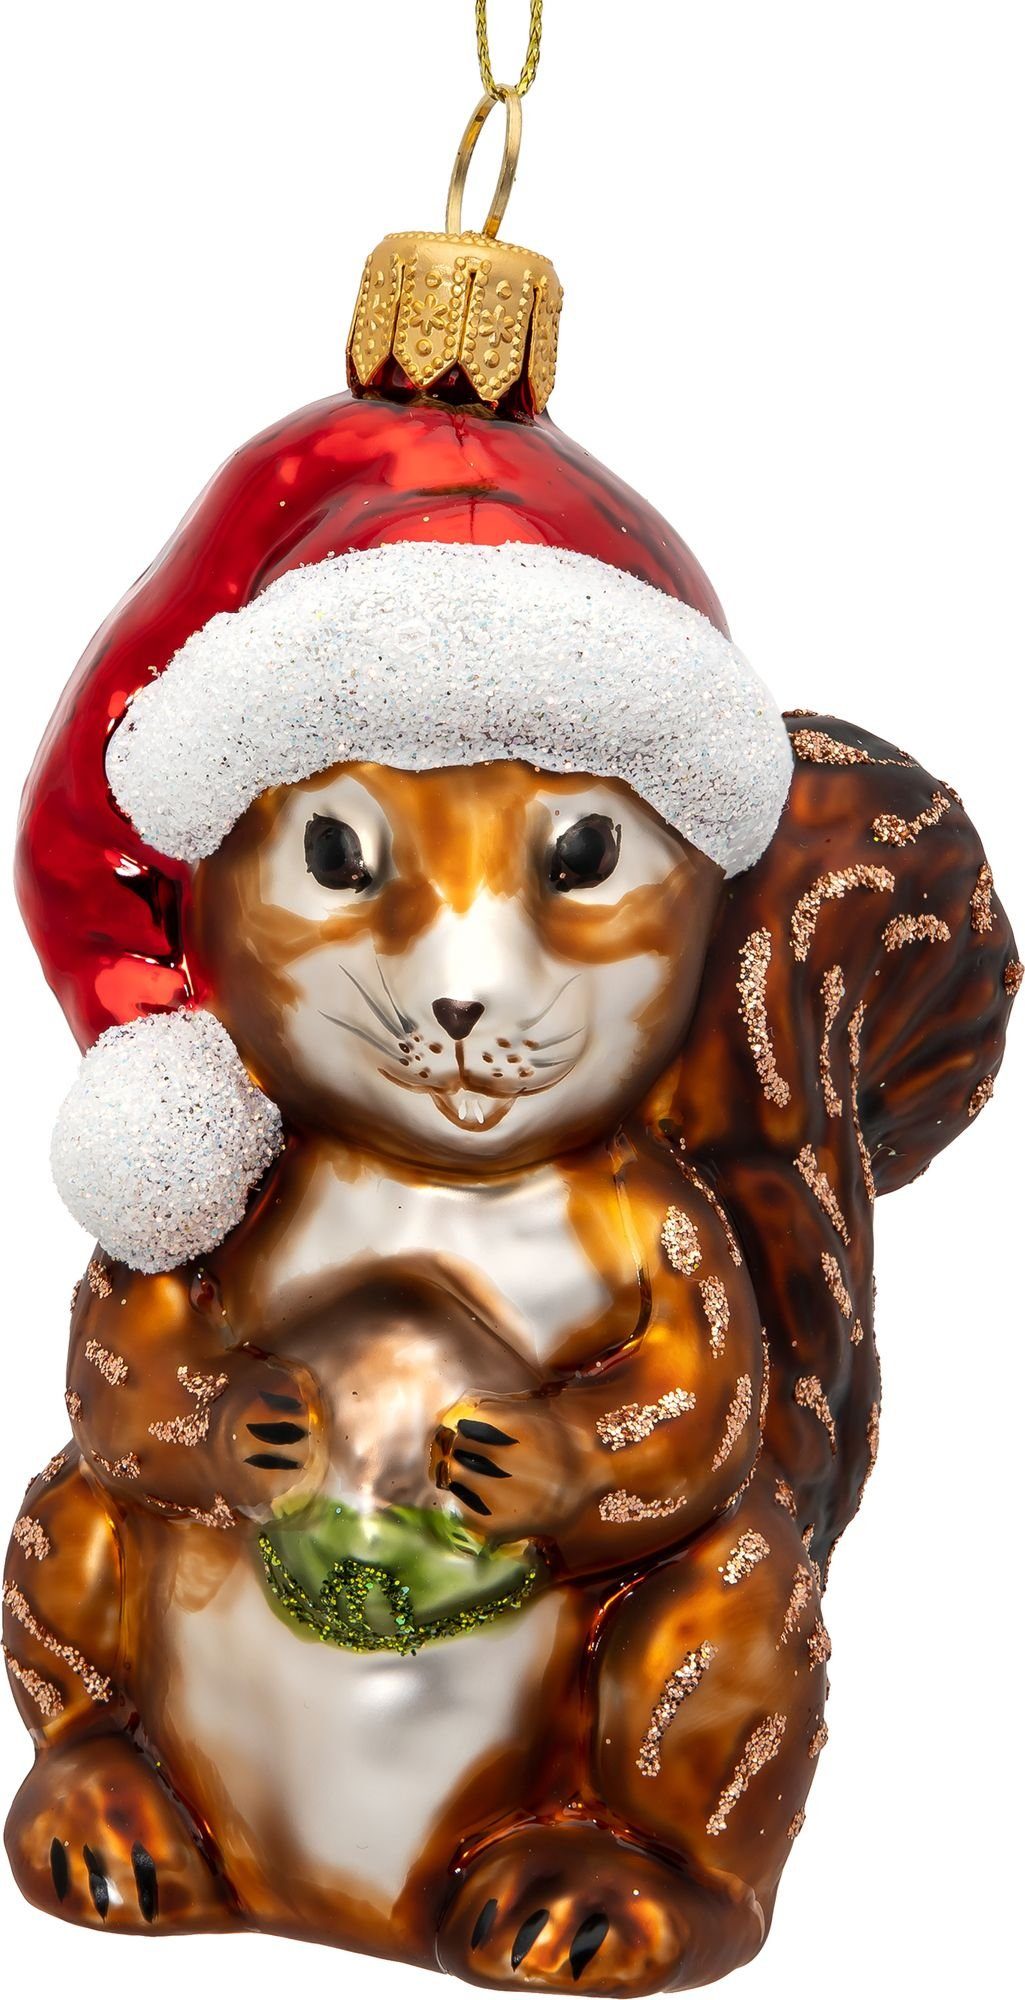 Eichhörnchen Weihnachtsmütze mit Weihnachtsbaum Figur Glas Line BS727 - Premium Christbaumschmuck SIKORA Anhänger